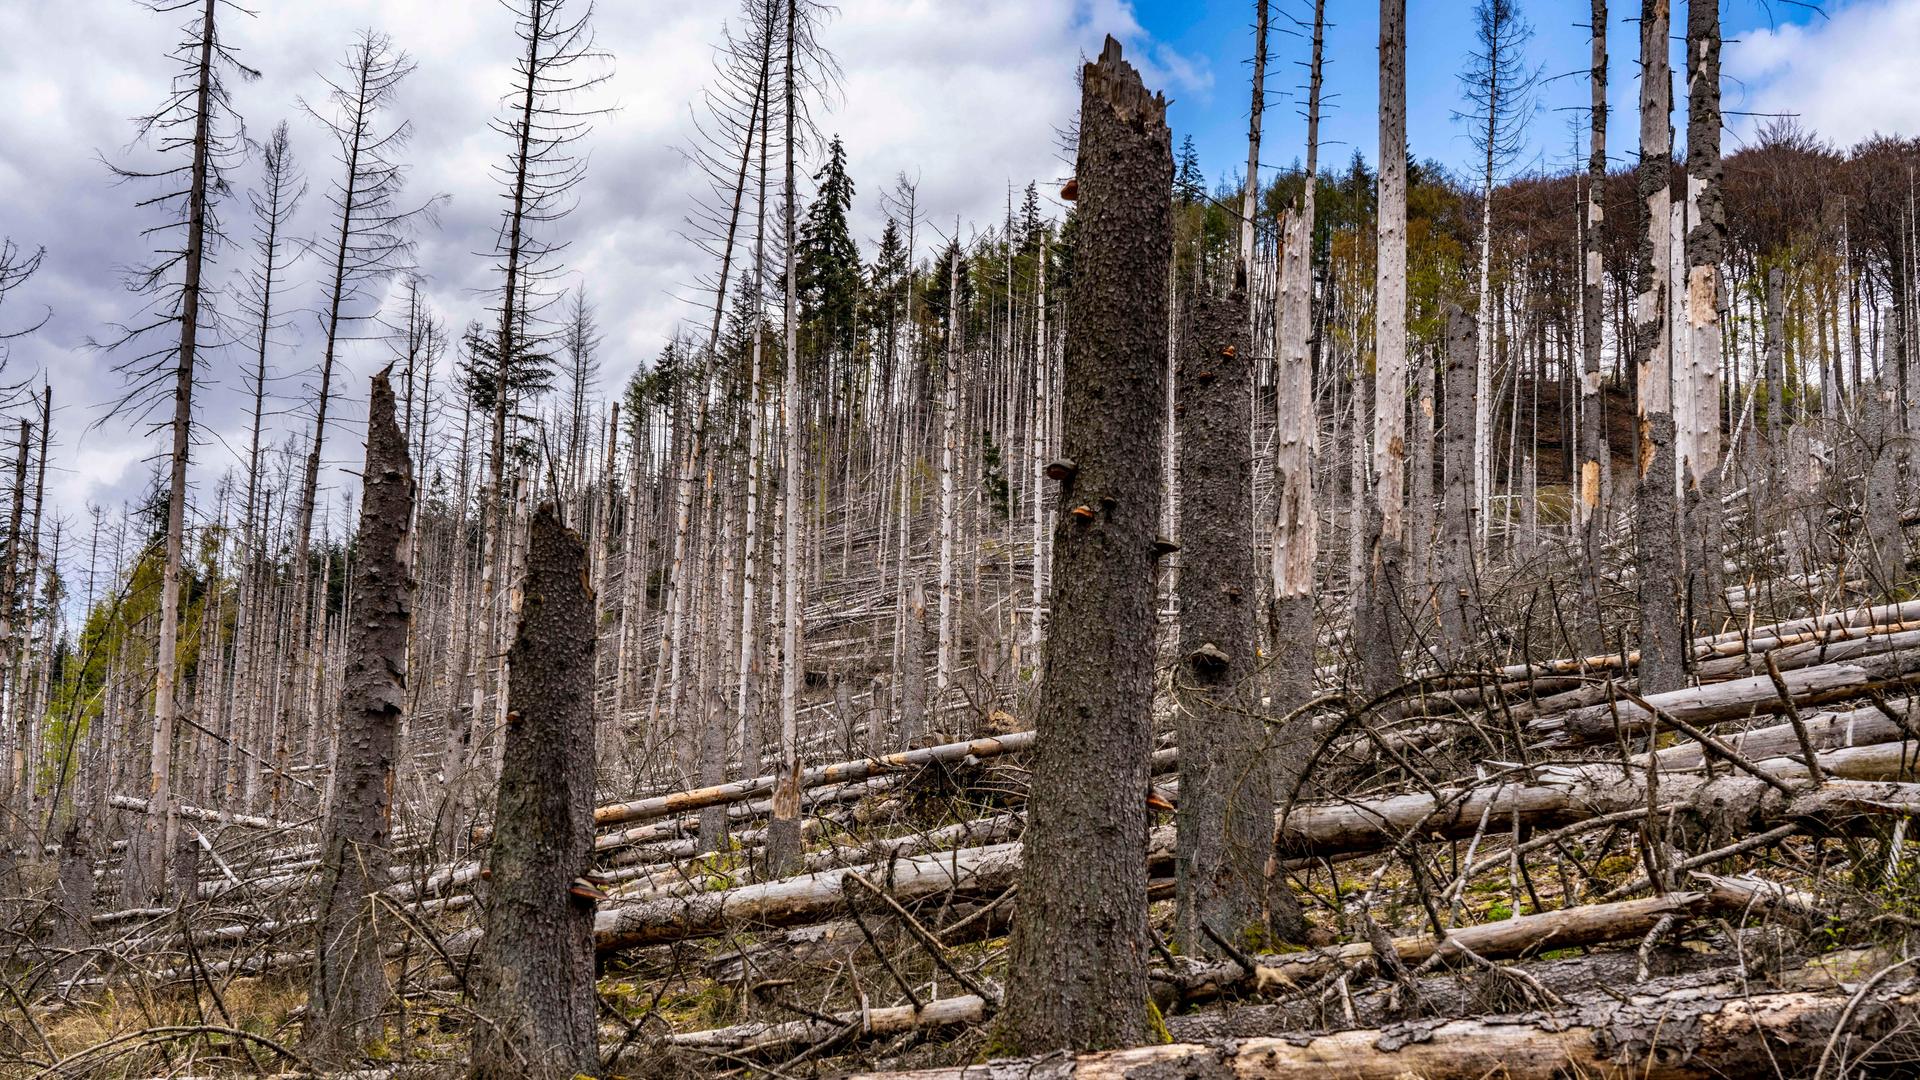 Blick auf tote Fichten im Naturpark Arnsberger Wald: Über 70 Prozent der Bäume sind erkrankt oder beschädigt, meist durch den Borkenkäfer, der sich durch die zunehmende Trockenheit und Wärme aufgrund des Klimawandels, verbreiten konnte.